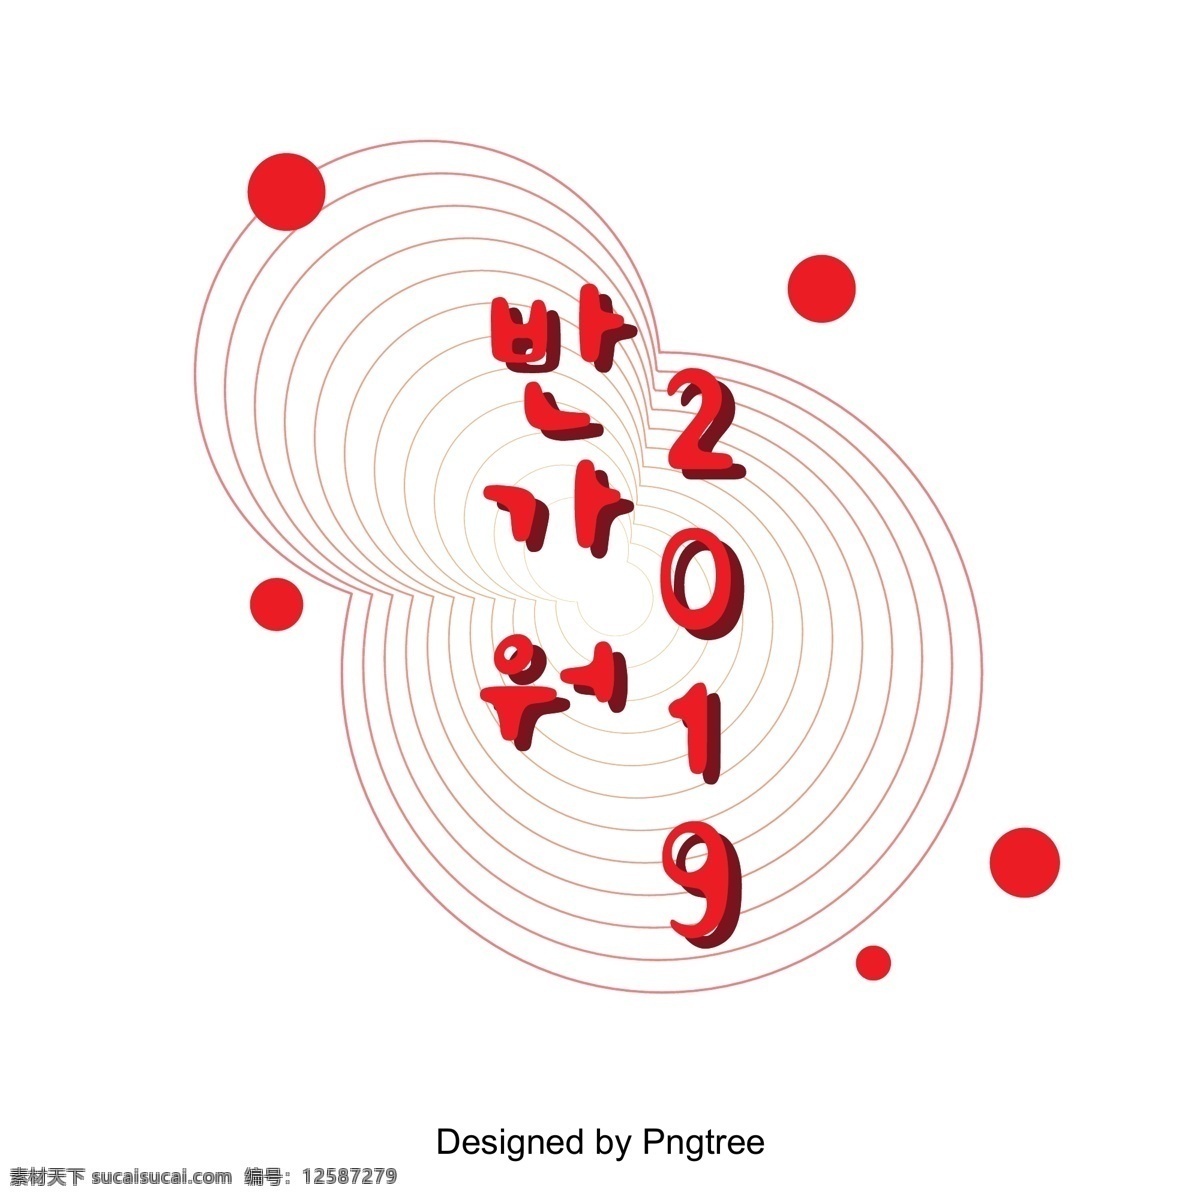 很 高兴 见到 2019 红色 原型 前 场景 年 圆 几何 禅 韩文 现场 字形